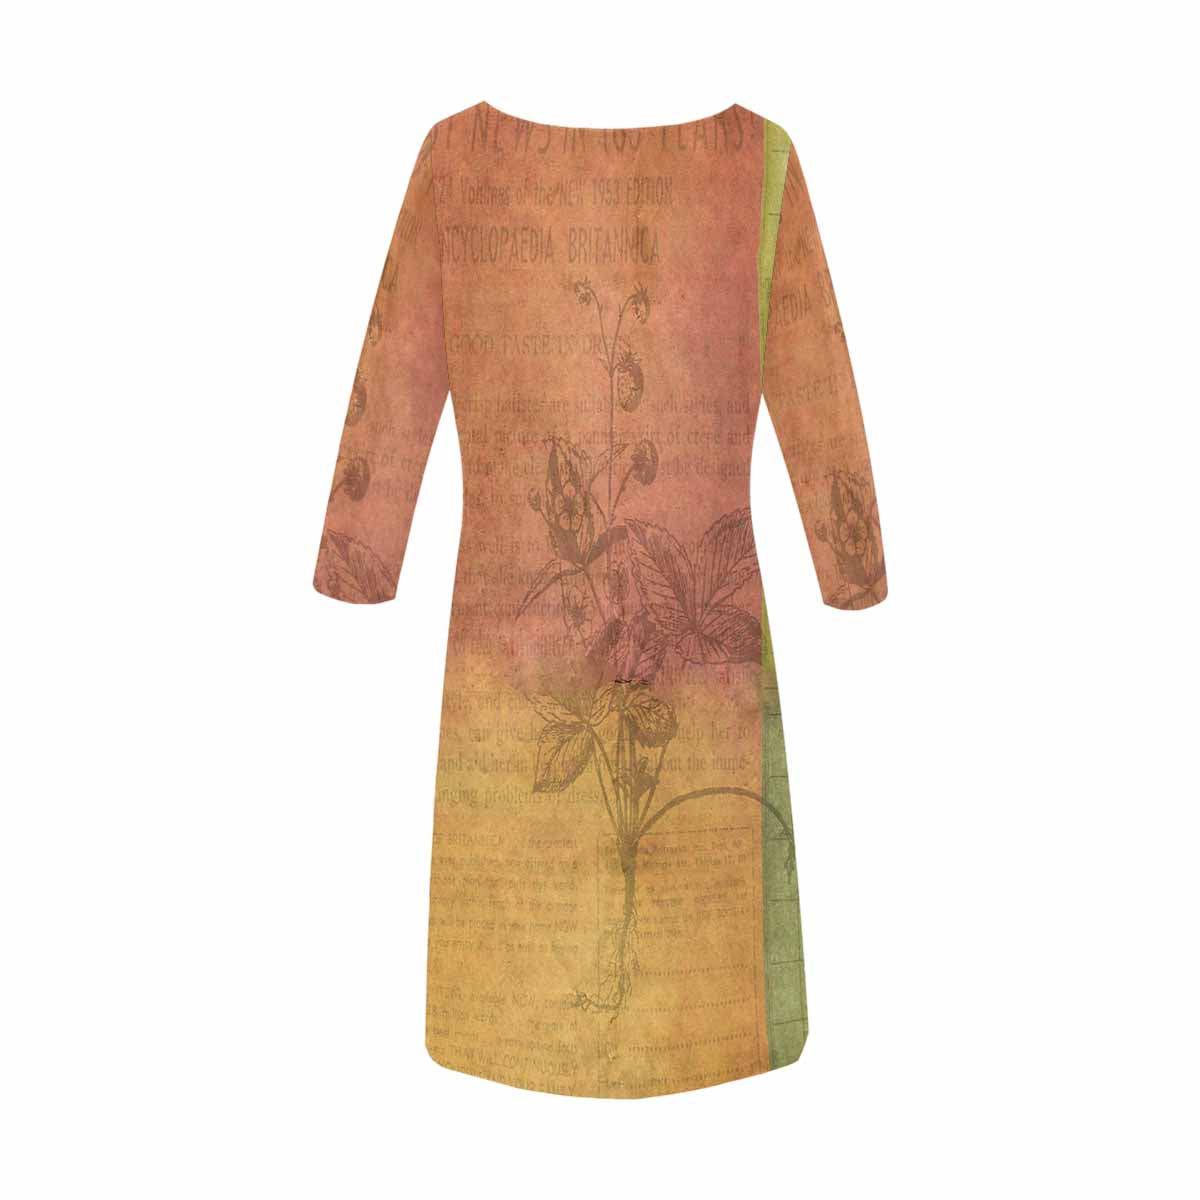 Antique General loose dress, MODEL 29532, design 31